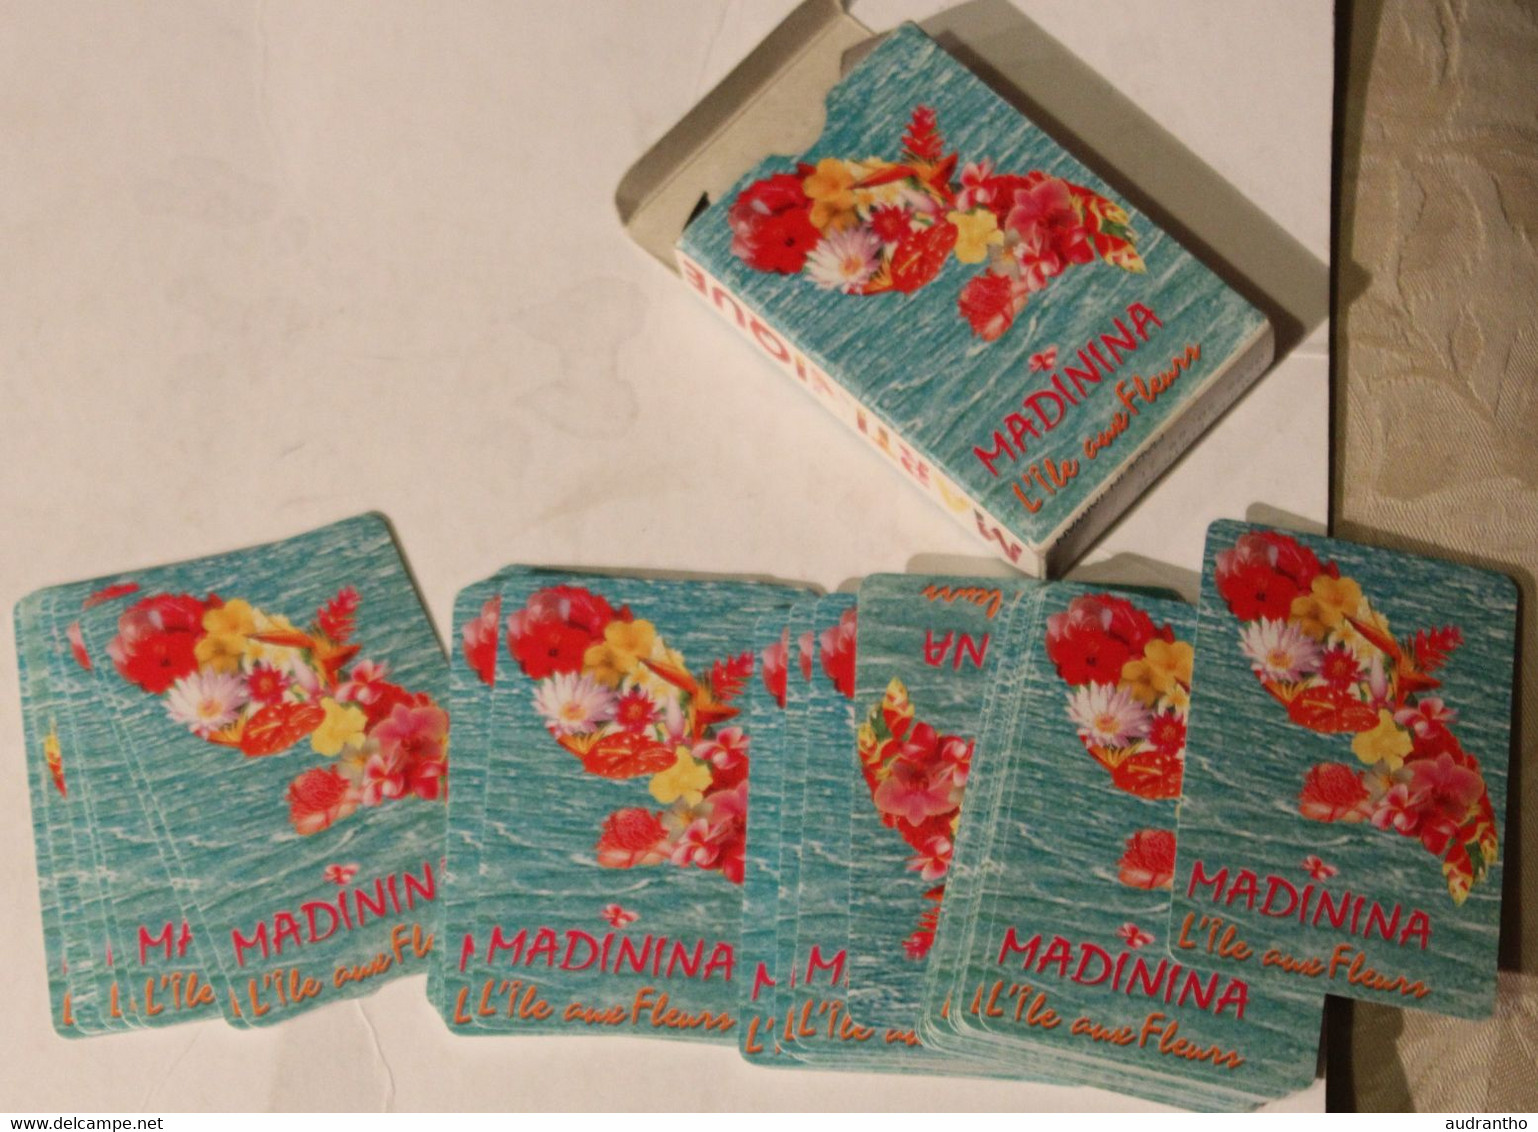 jeu de 54 cartes à jouer publicitaire La Martinique Madinina L'île aux fleurs Lauma éditions